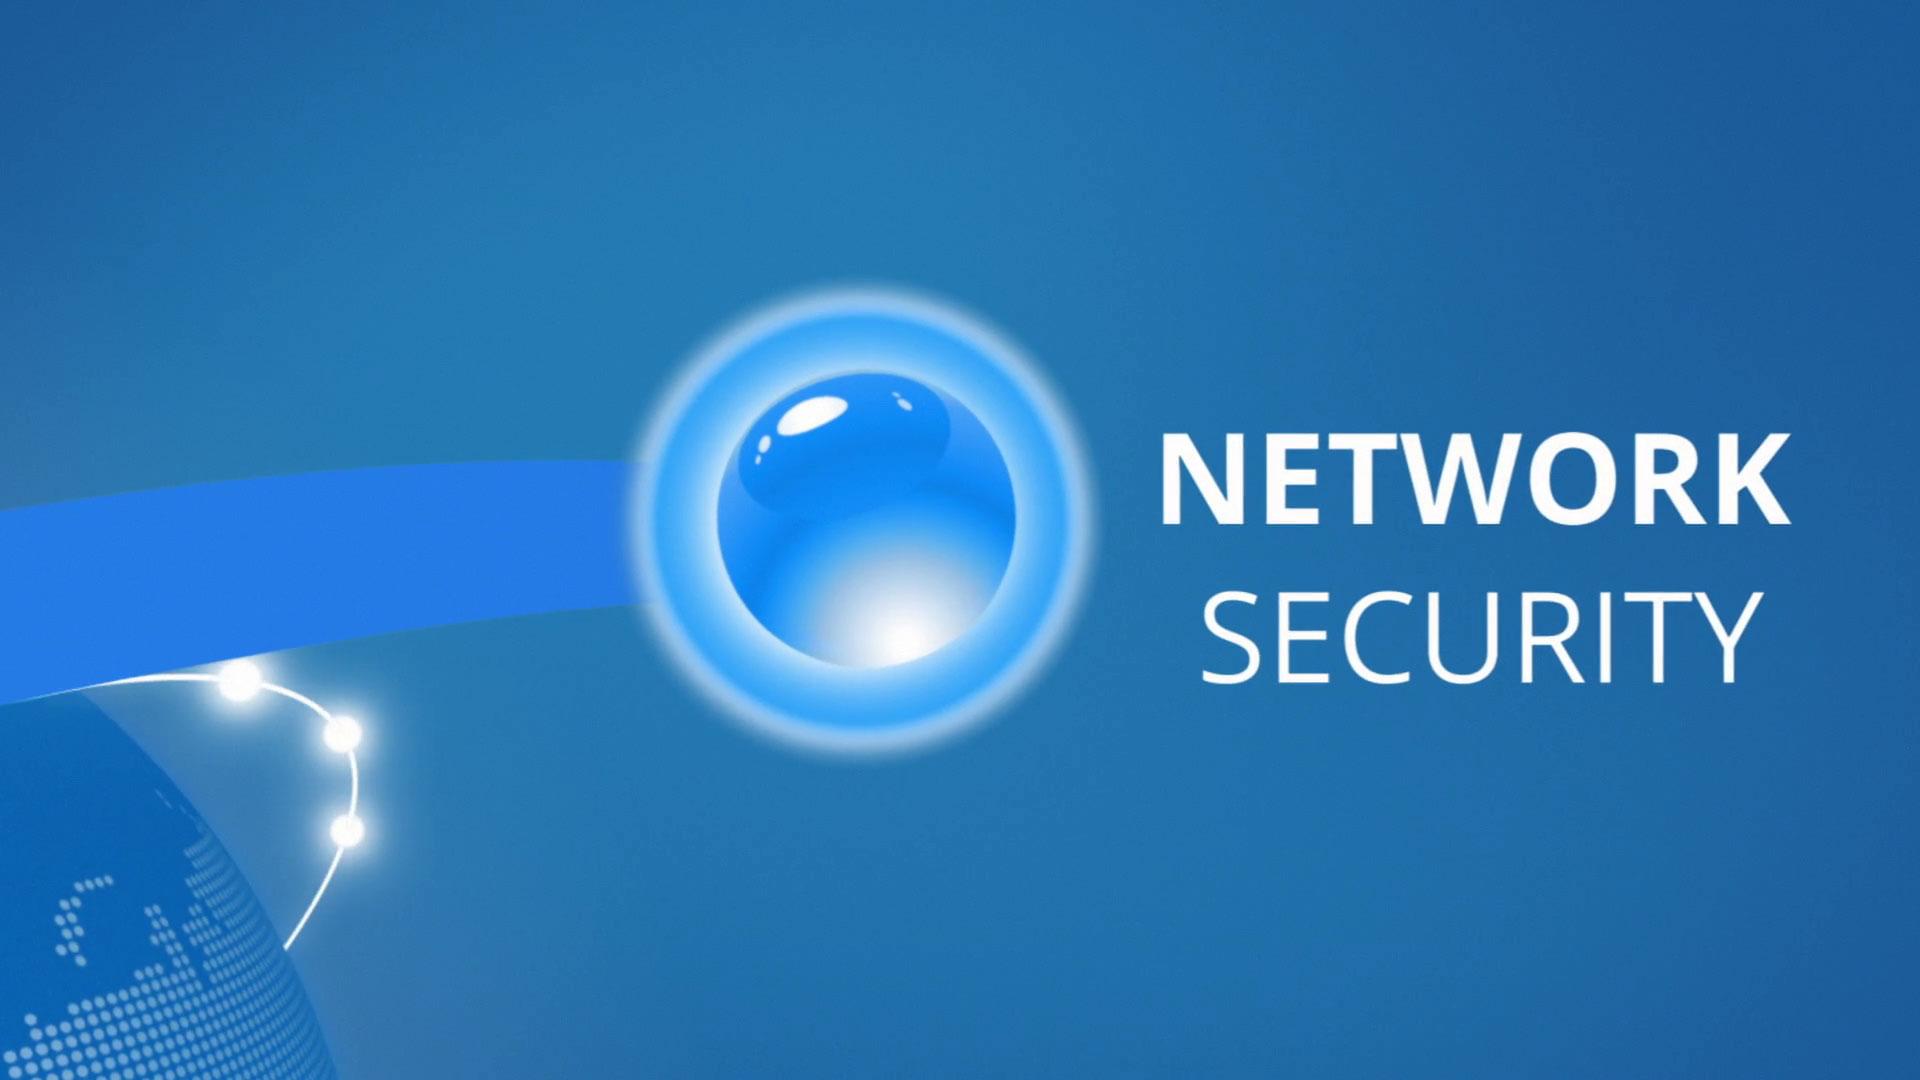 Qualys Network Security. Qualys, Inc